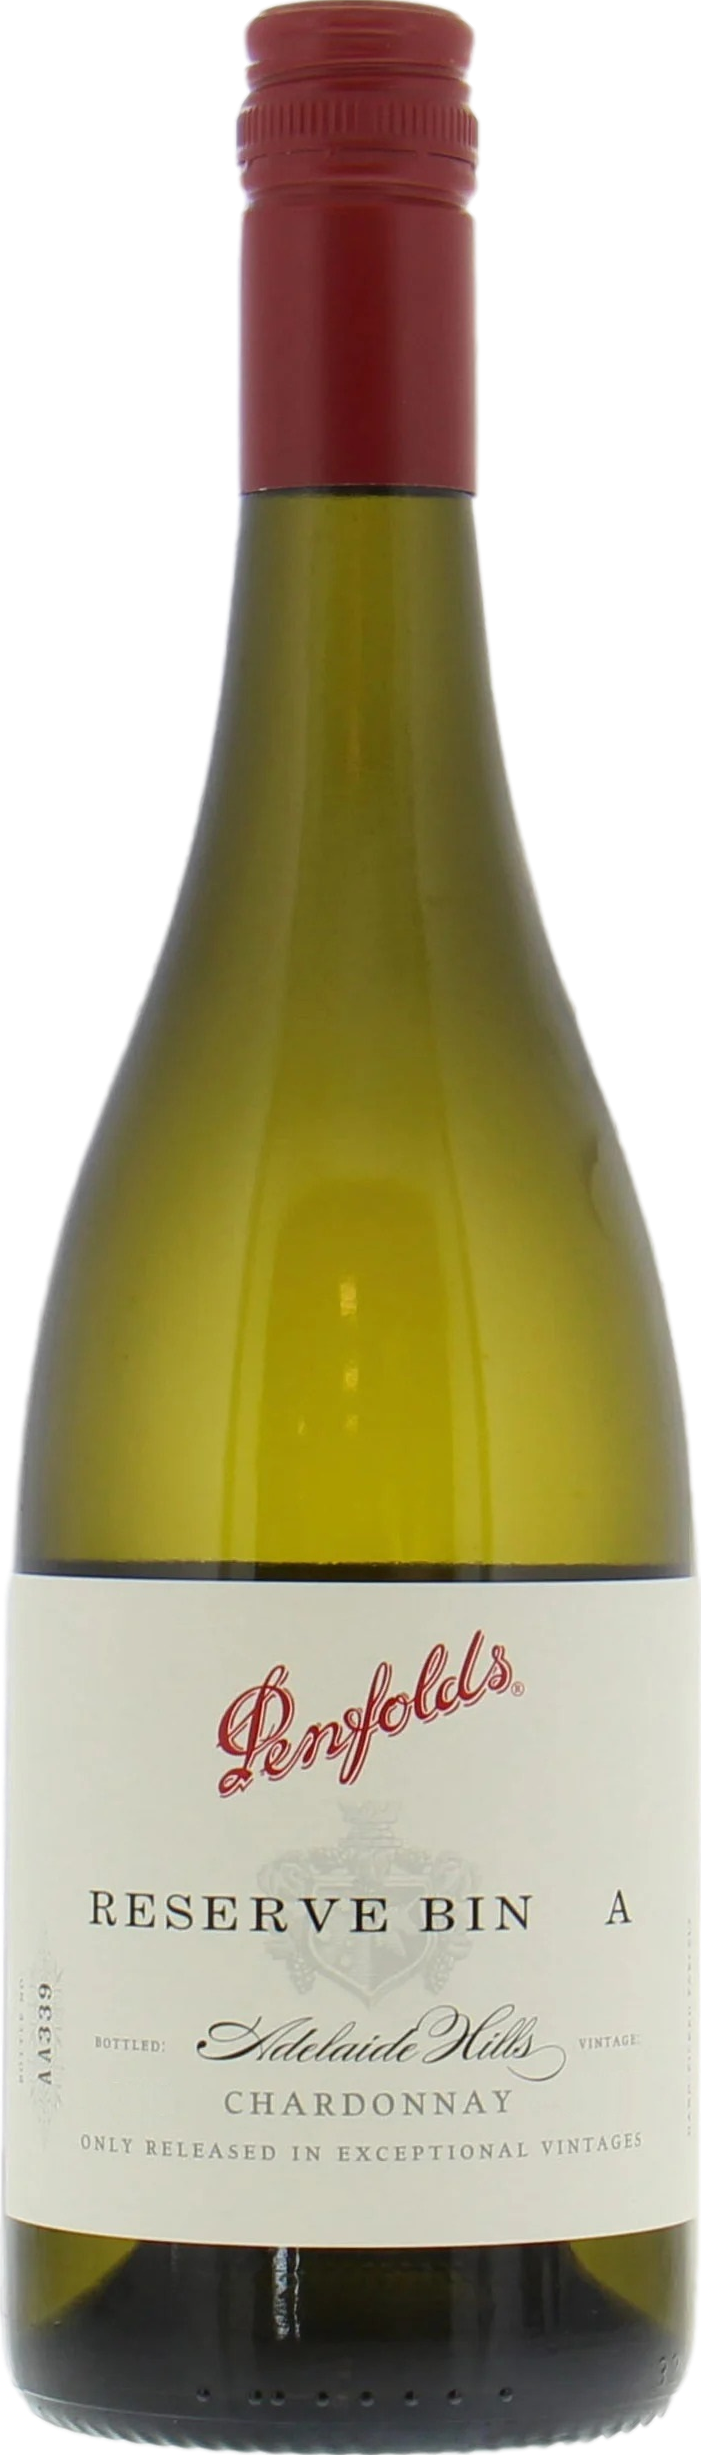 Penfolds Reserve Bin A Chardonnay 2019